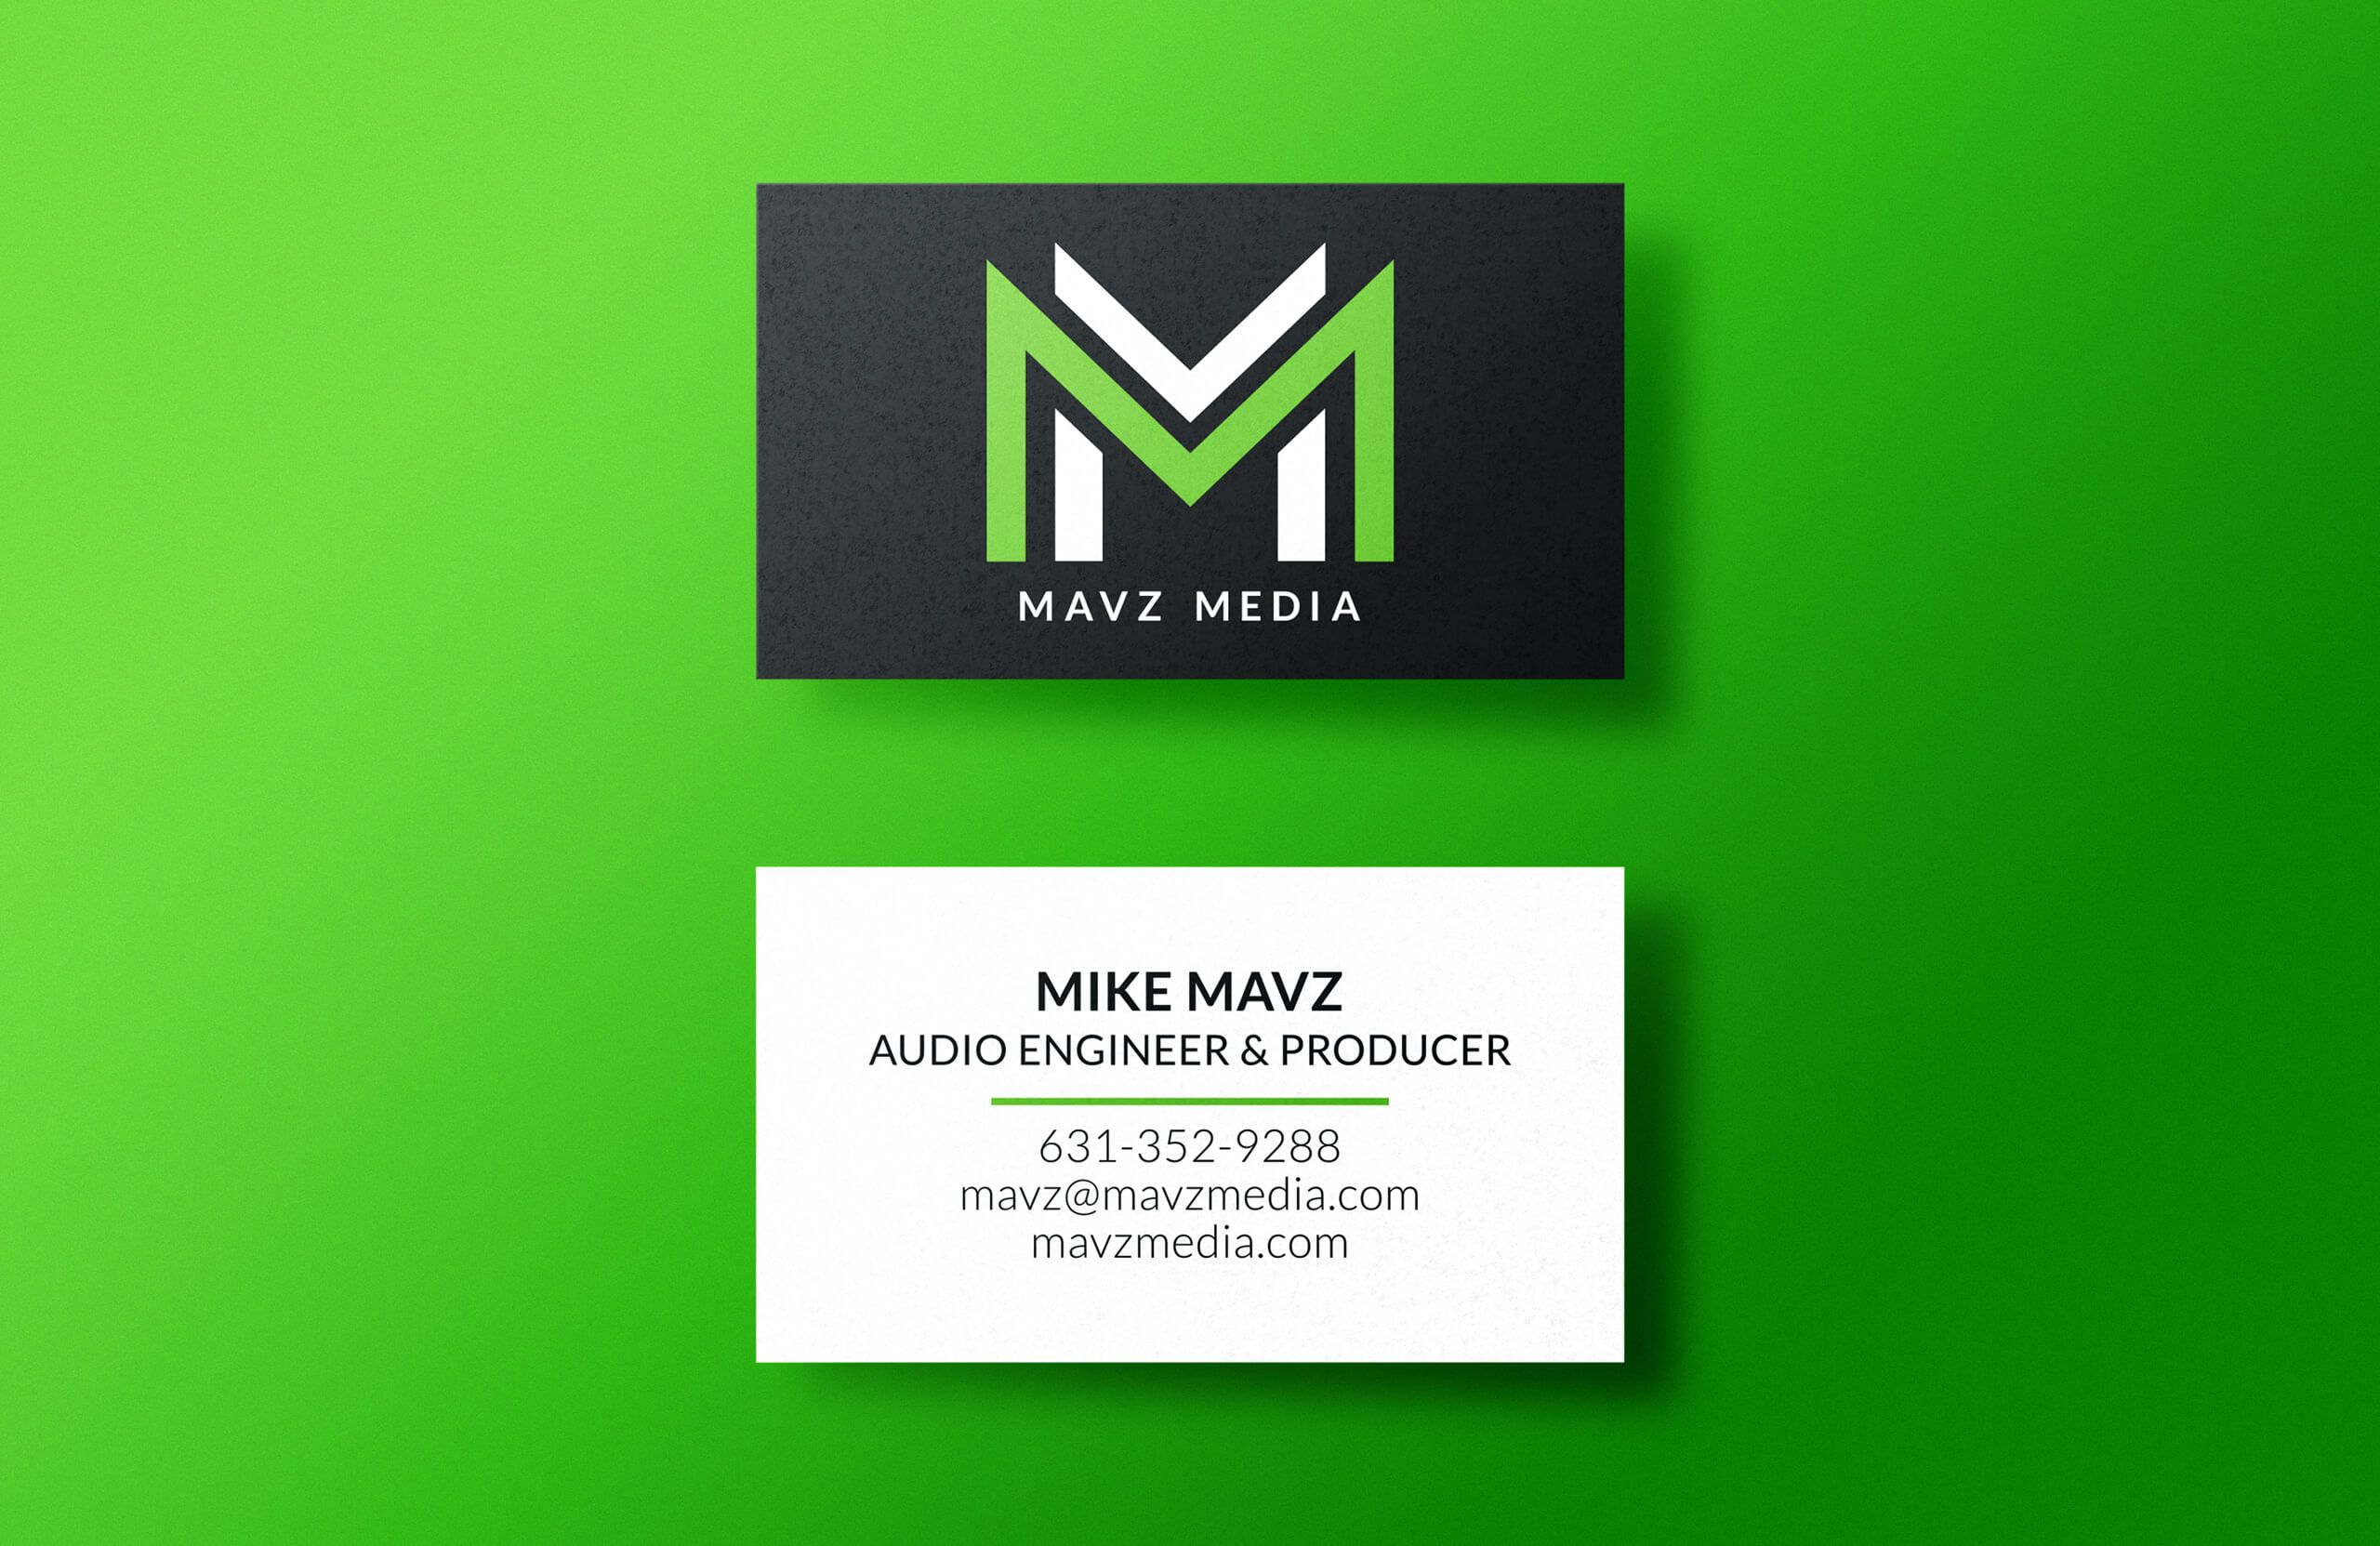 Mavz Media Business Cards by Garett Southerton, Creative Brand Strategist of Garett® based in Long Island, New York